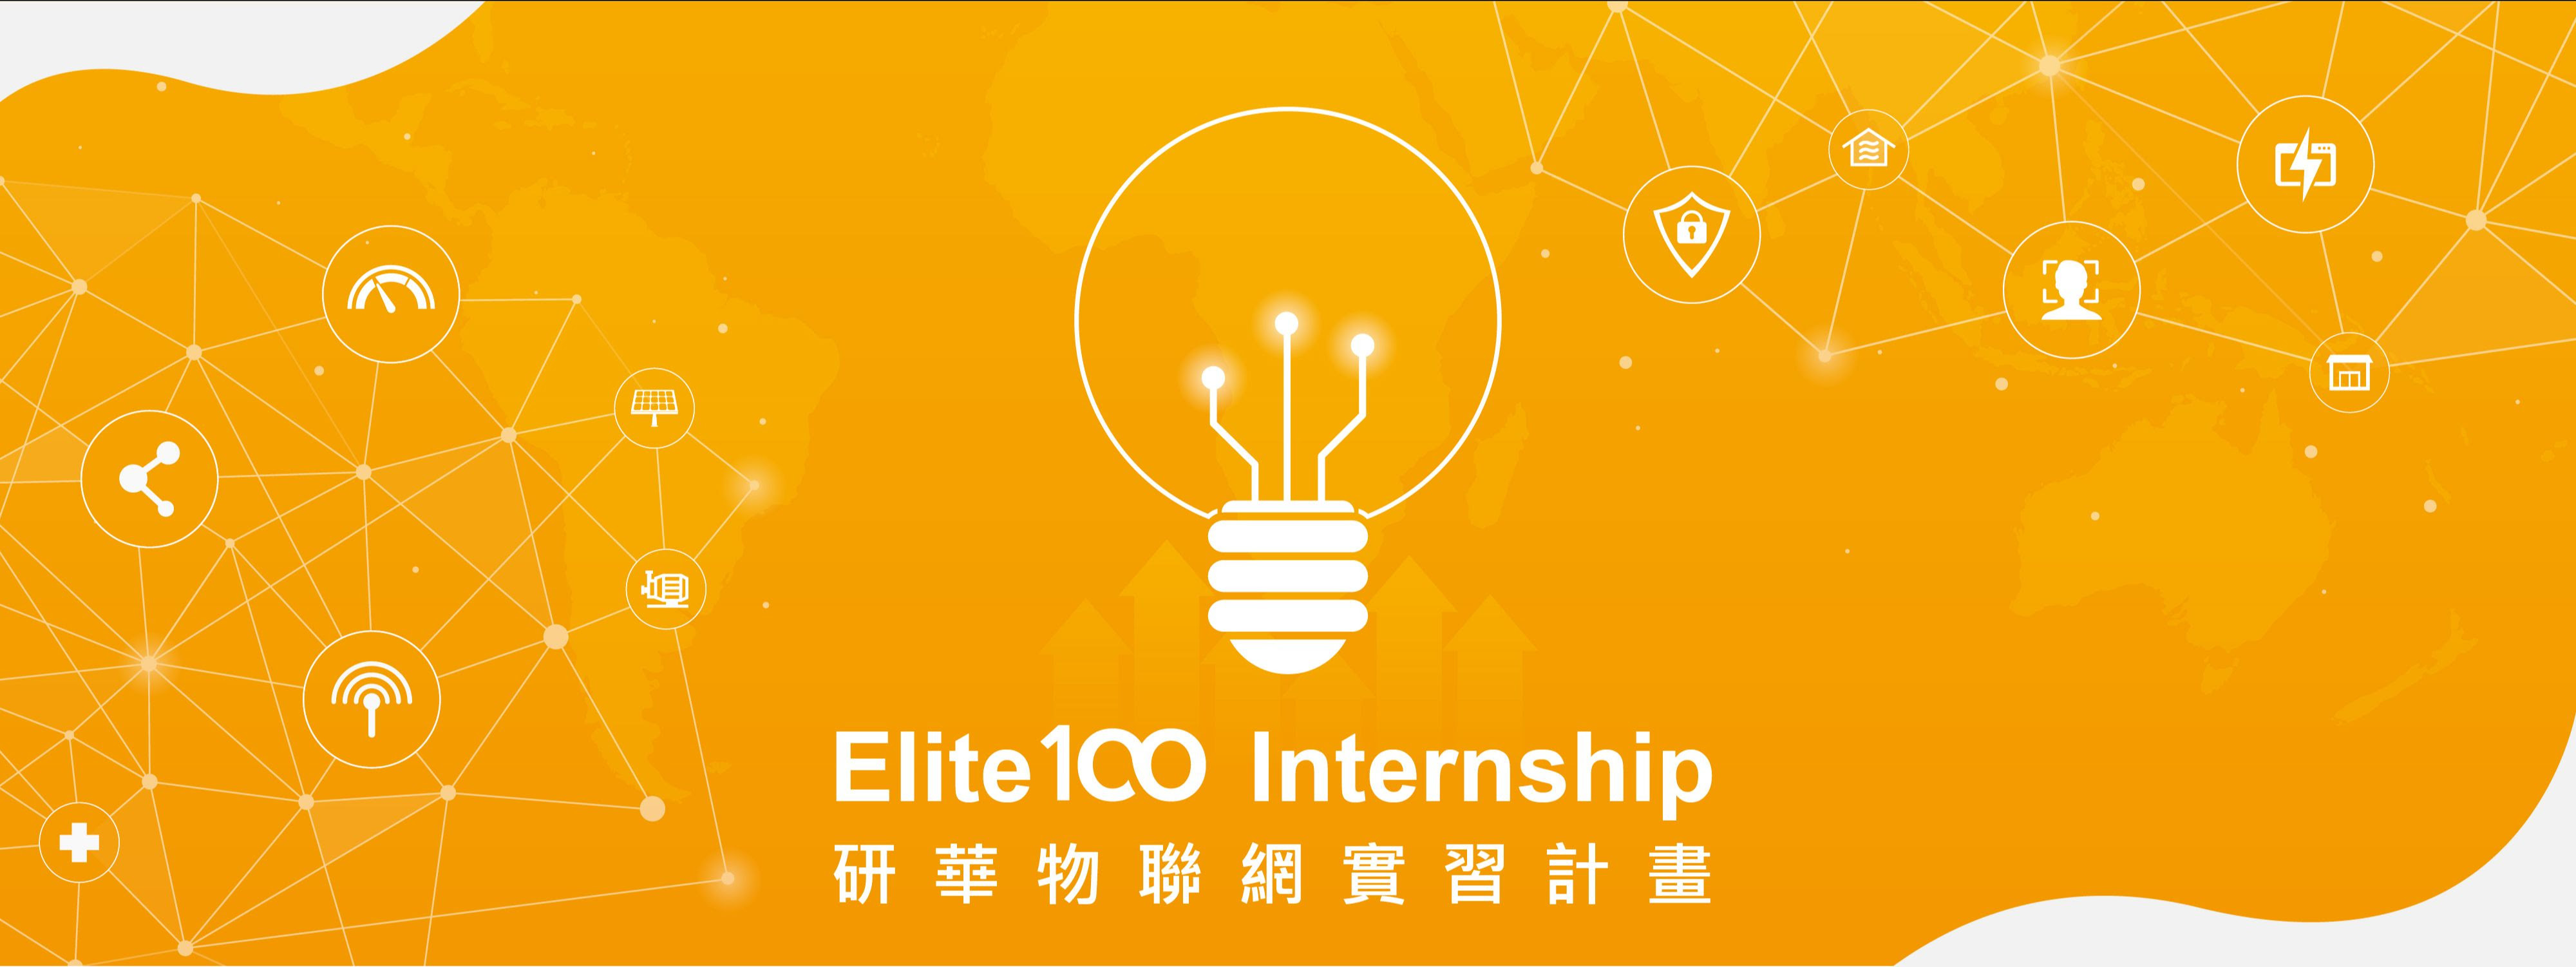 Elite 100 Internship